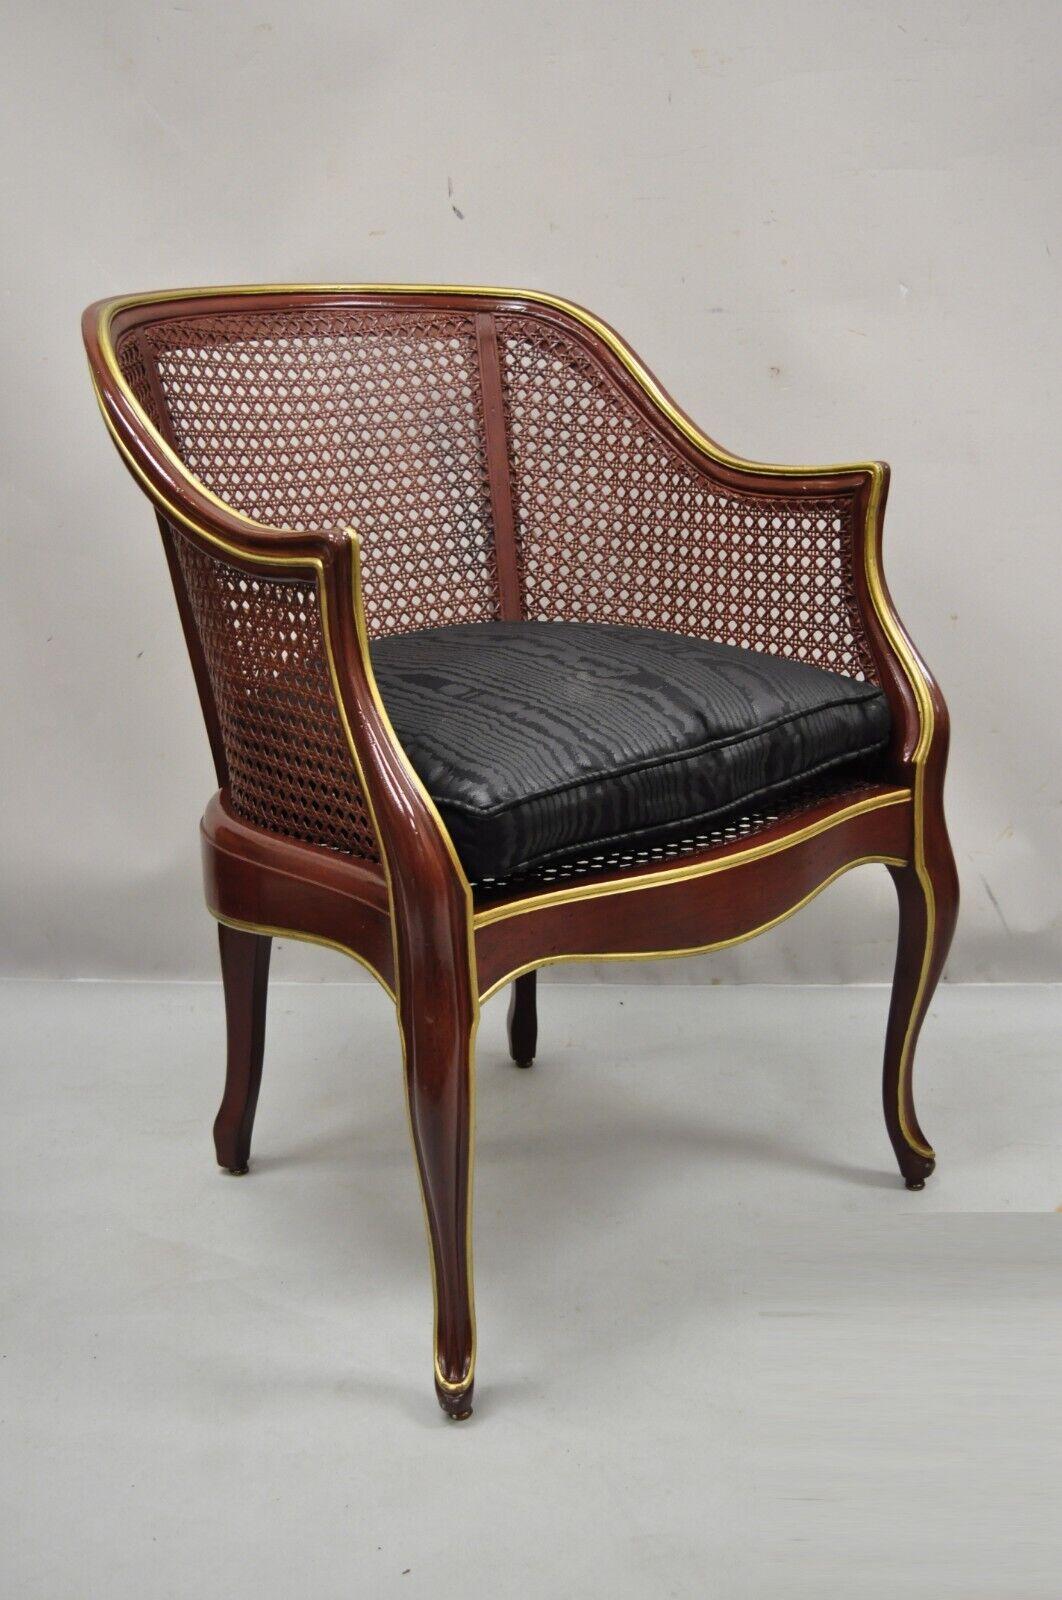 Vintage Französisch Louis XV Stil Rot Lack Cane Bergere Lounge-Sessel. Artikel mit dunkelroter Lackierung, goldenen Akzenten, Rückenlehne und Sitz aus Schilfrohr, Massivholzrahmen, Cabriole-Beine, sehr schöner Vintage-Artikel, toller Stil und Form.